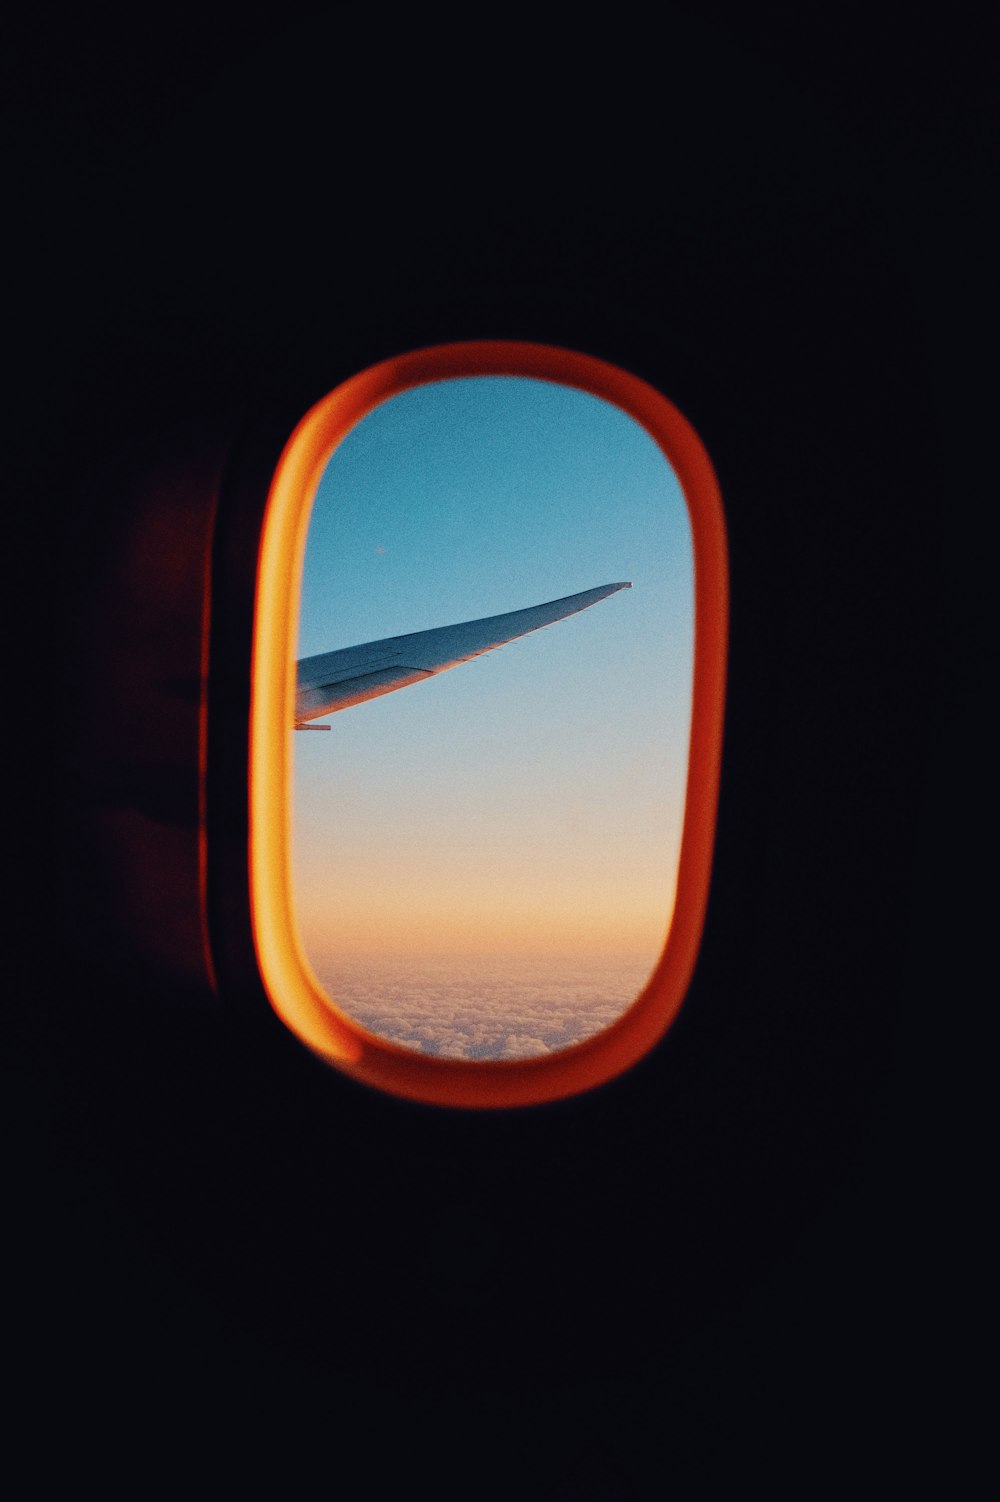 vista da janela do avião do céu nublado laranja e branco durante o dia